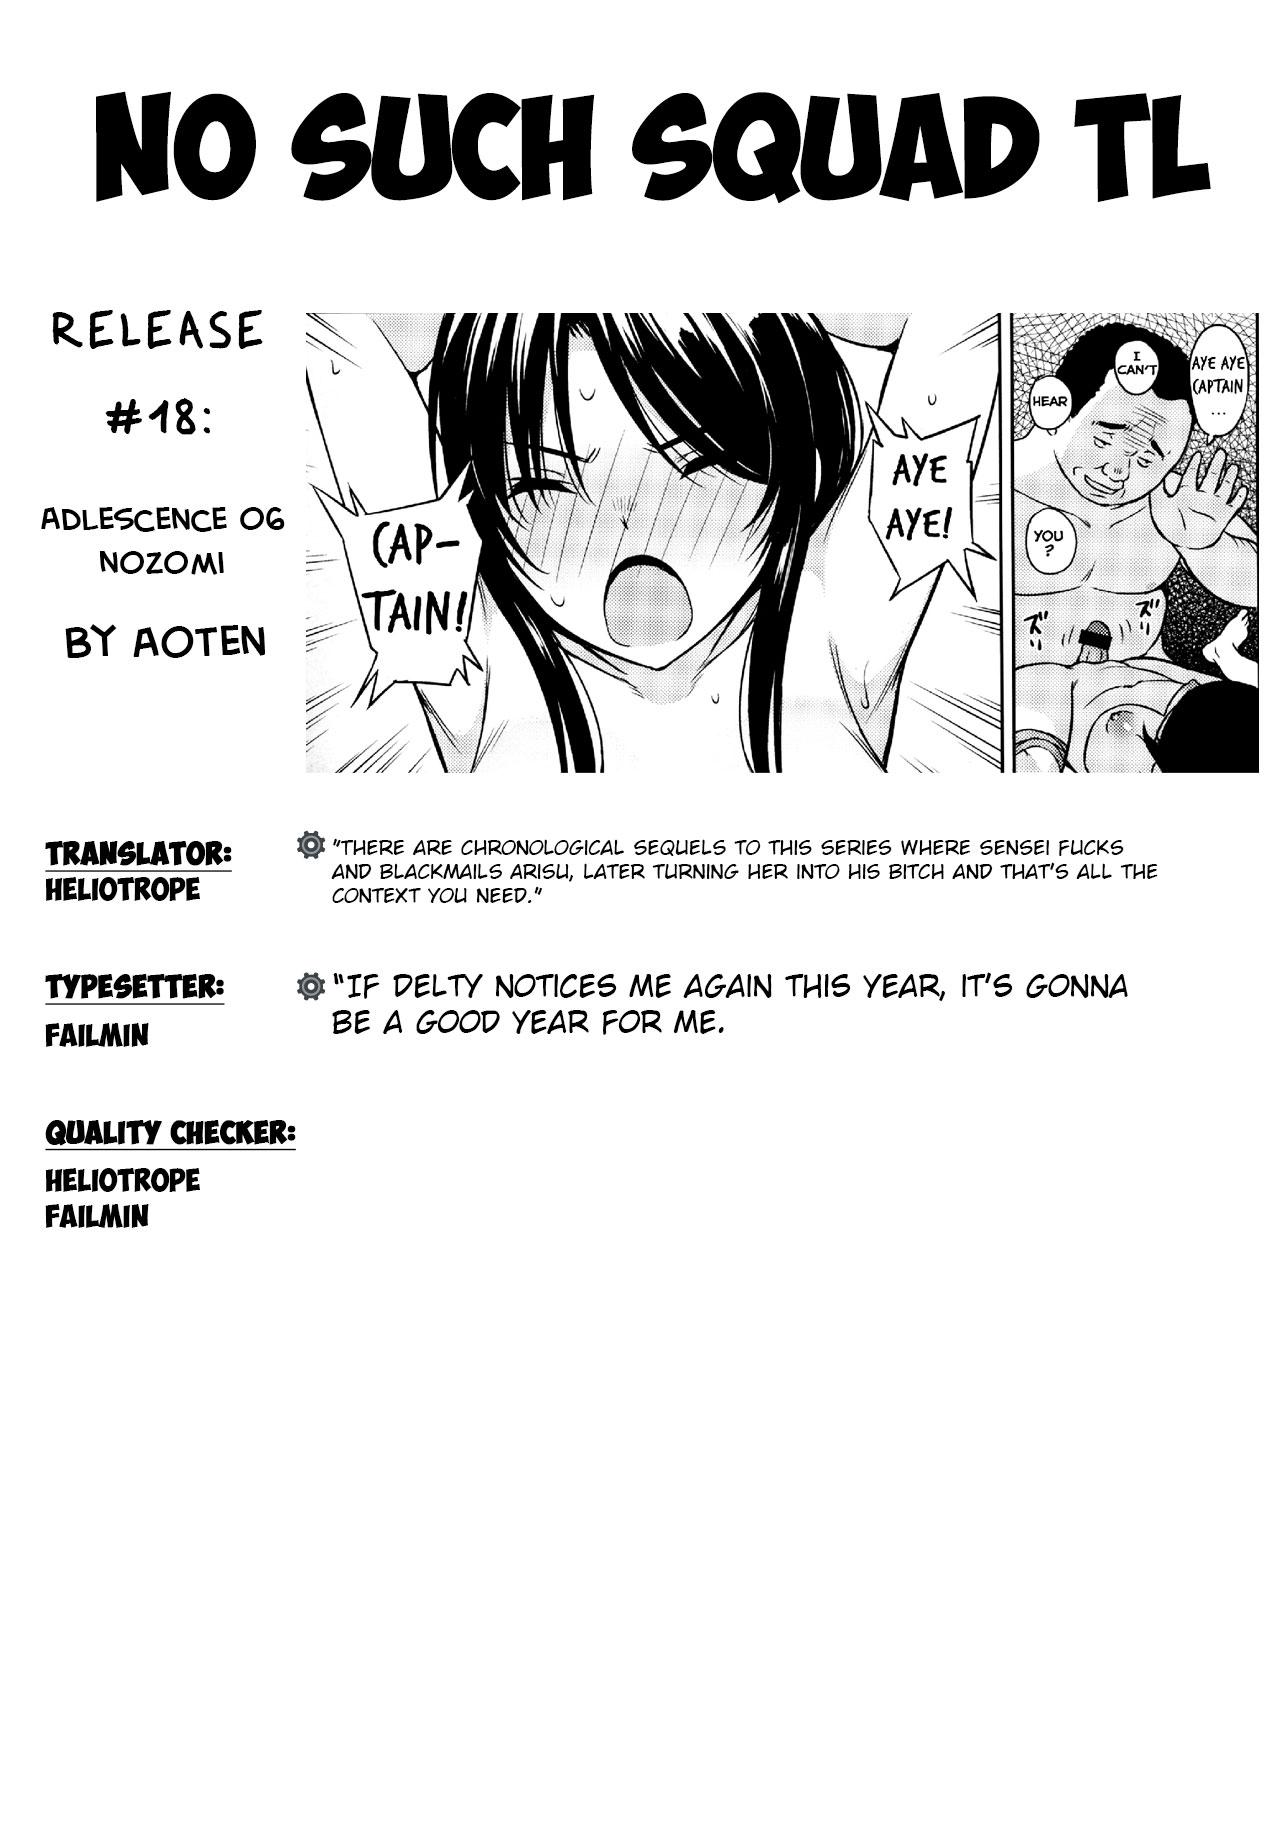 Jacking Adlescence 06 Nozomi - Original Amateur Porn - Page 31